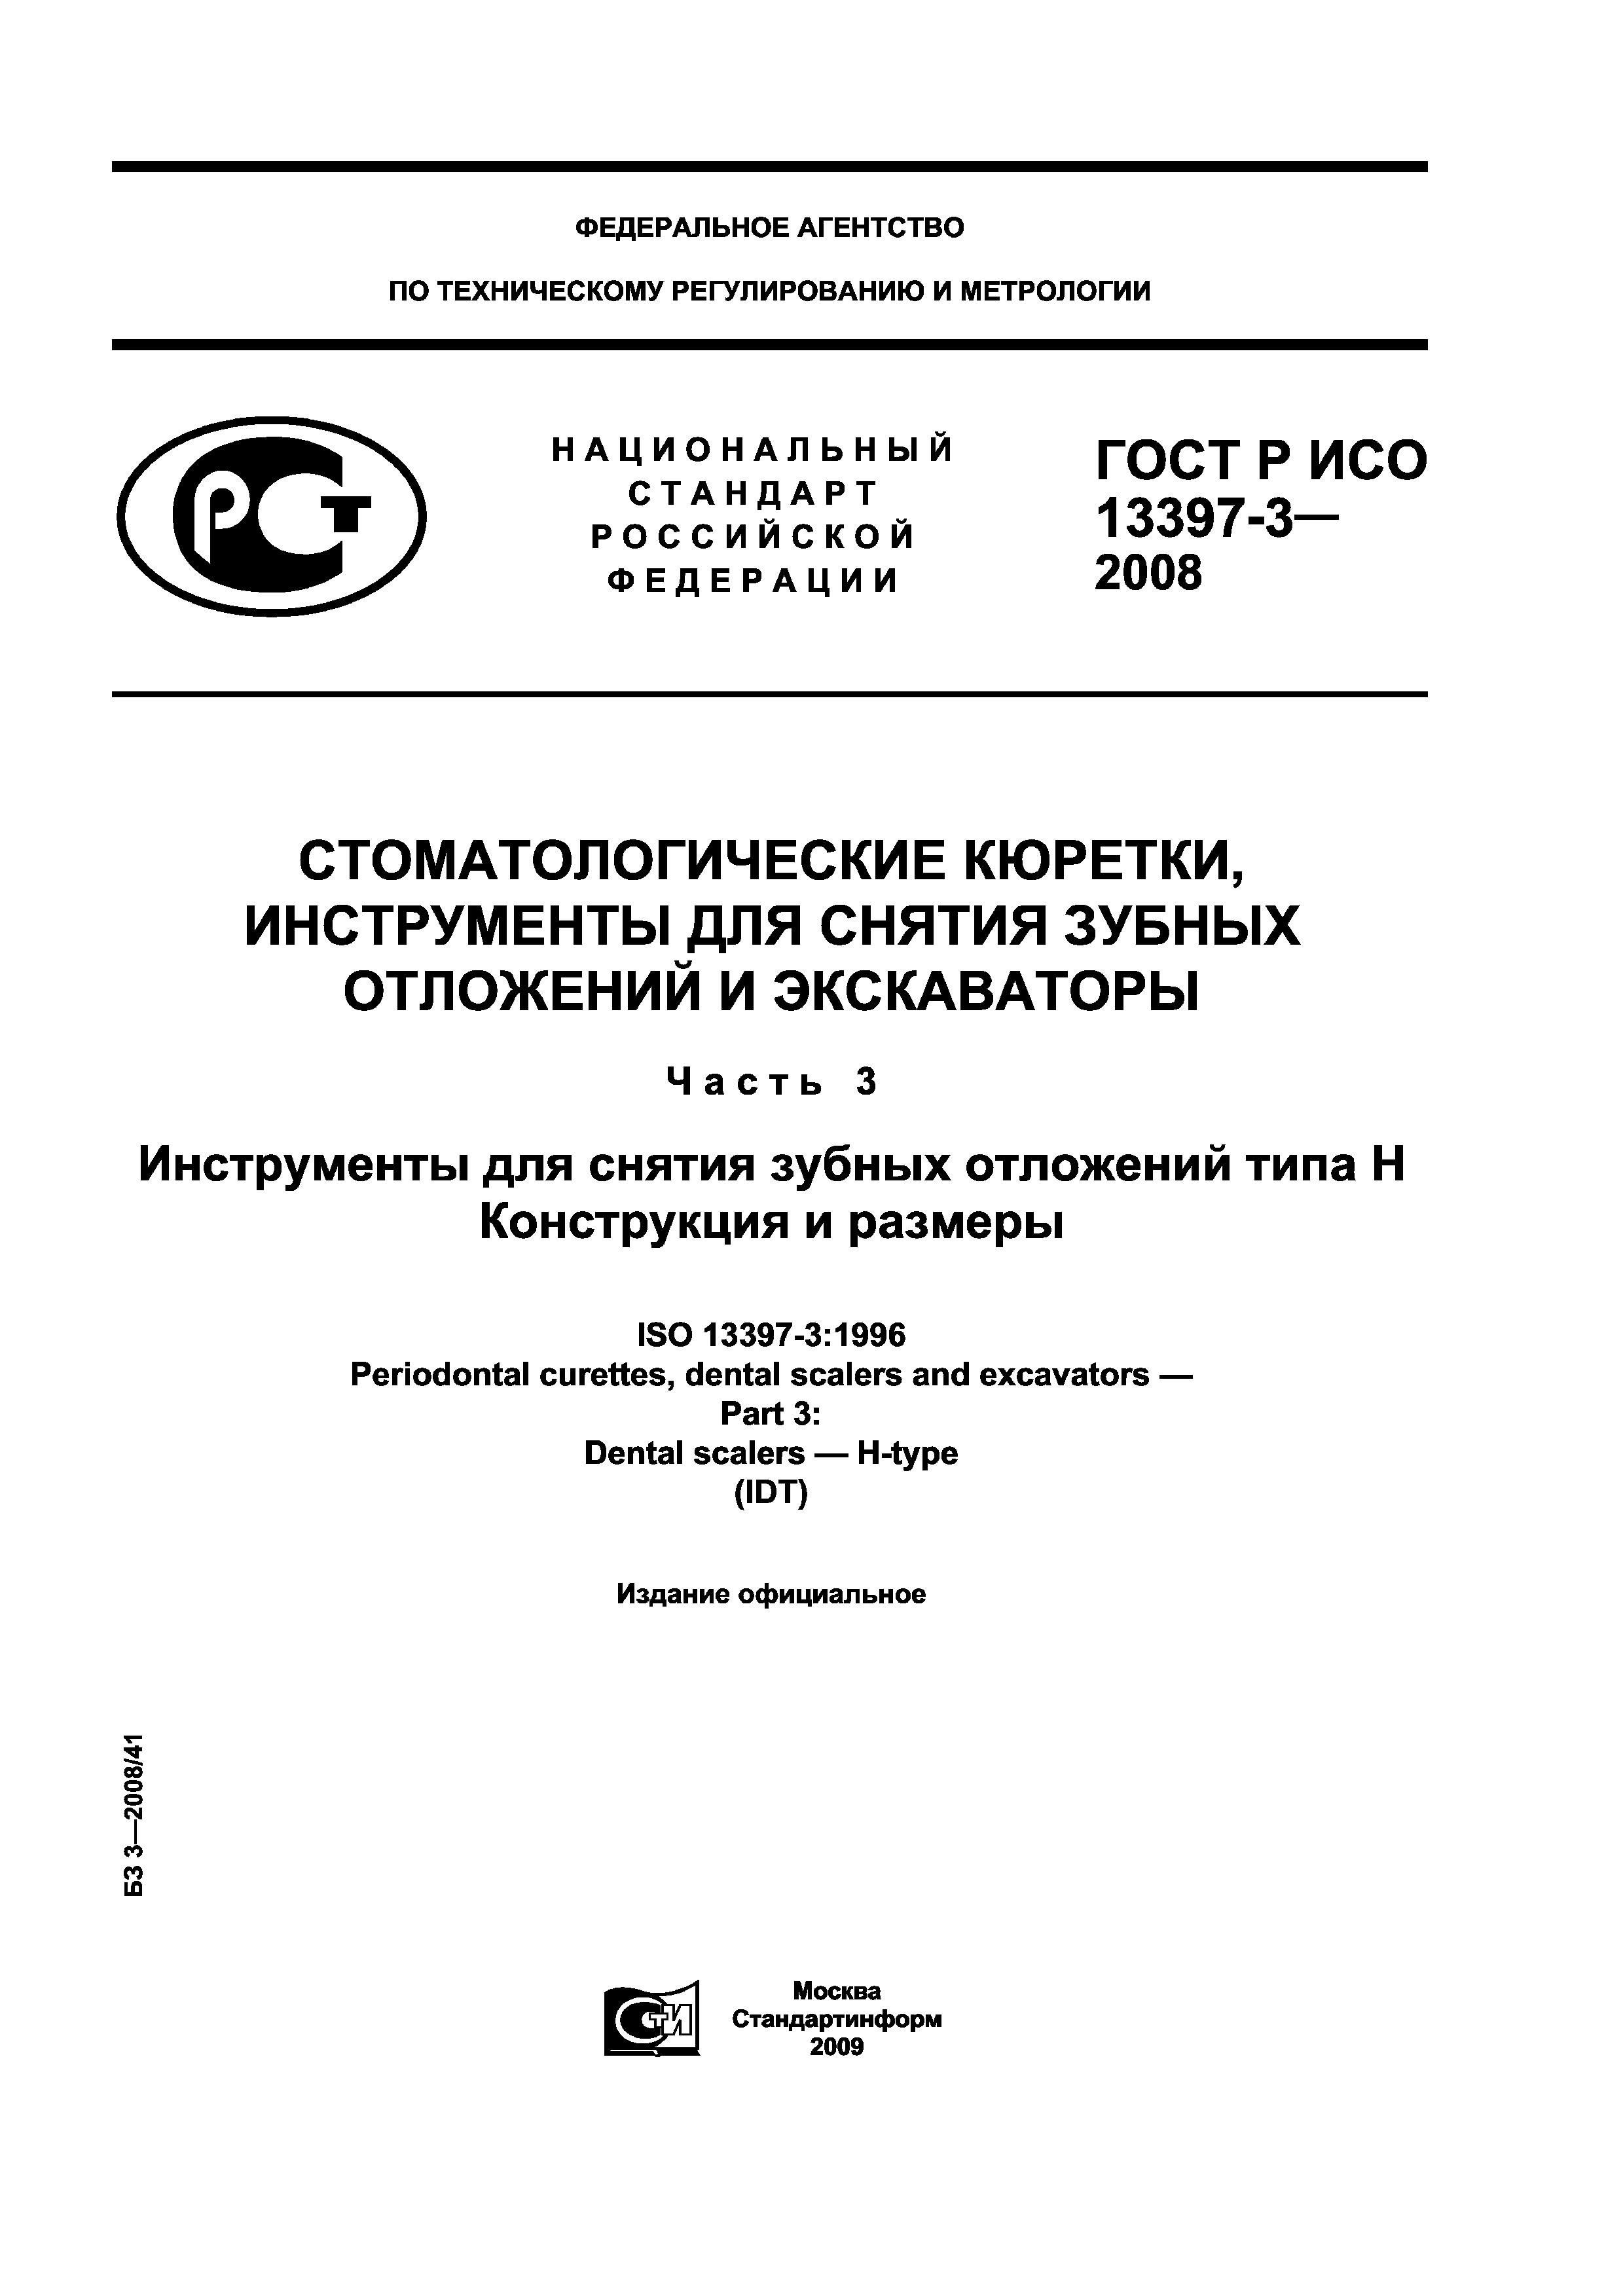 ГОСТ Р ИСО 13397-3-2008